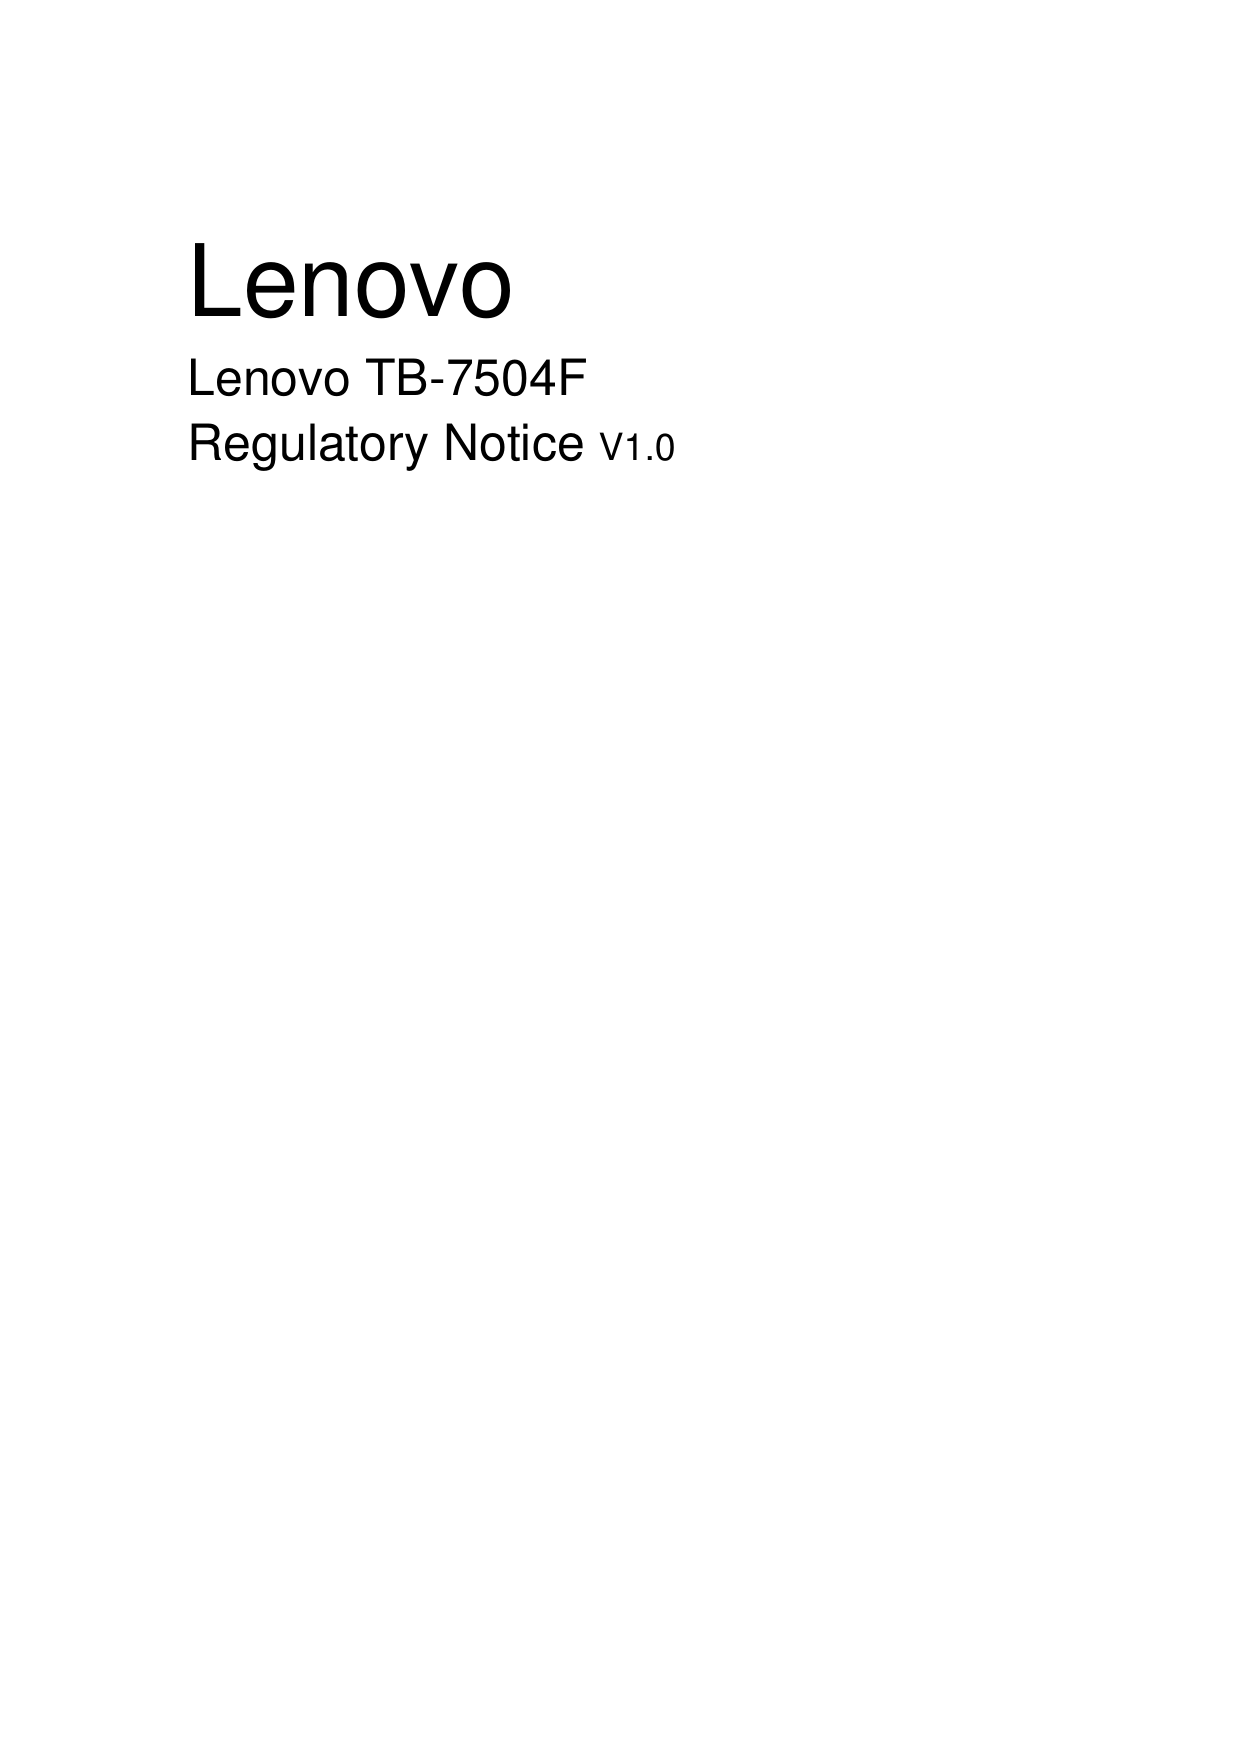   Lenovo Lenovo TB-7504F Regulatory Notice V1.0                                   